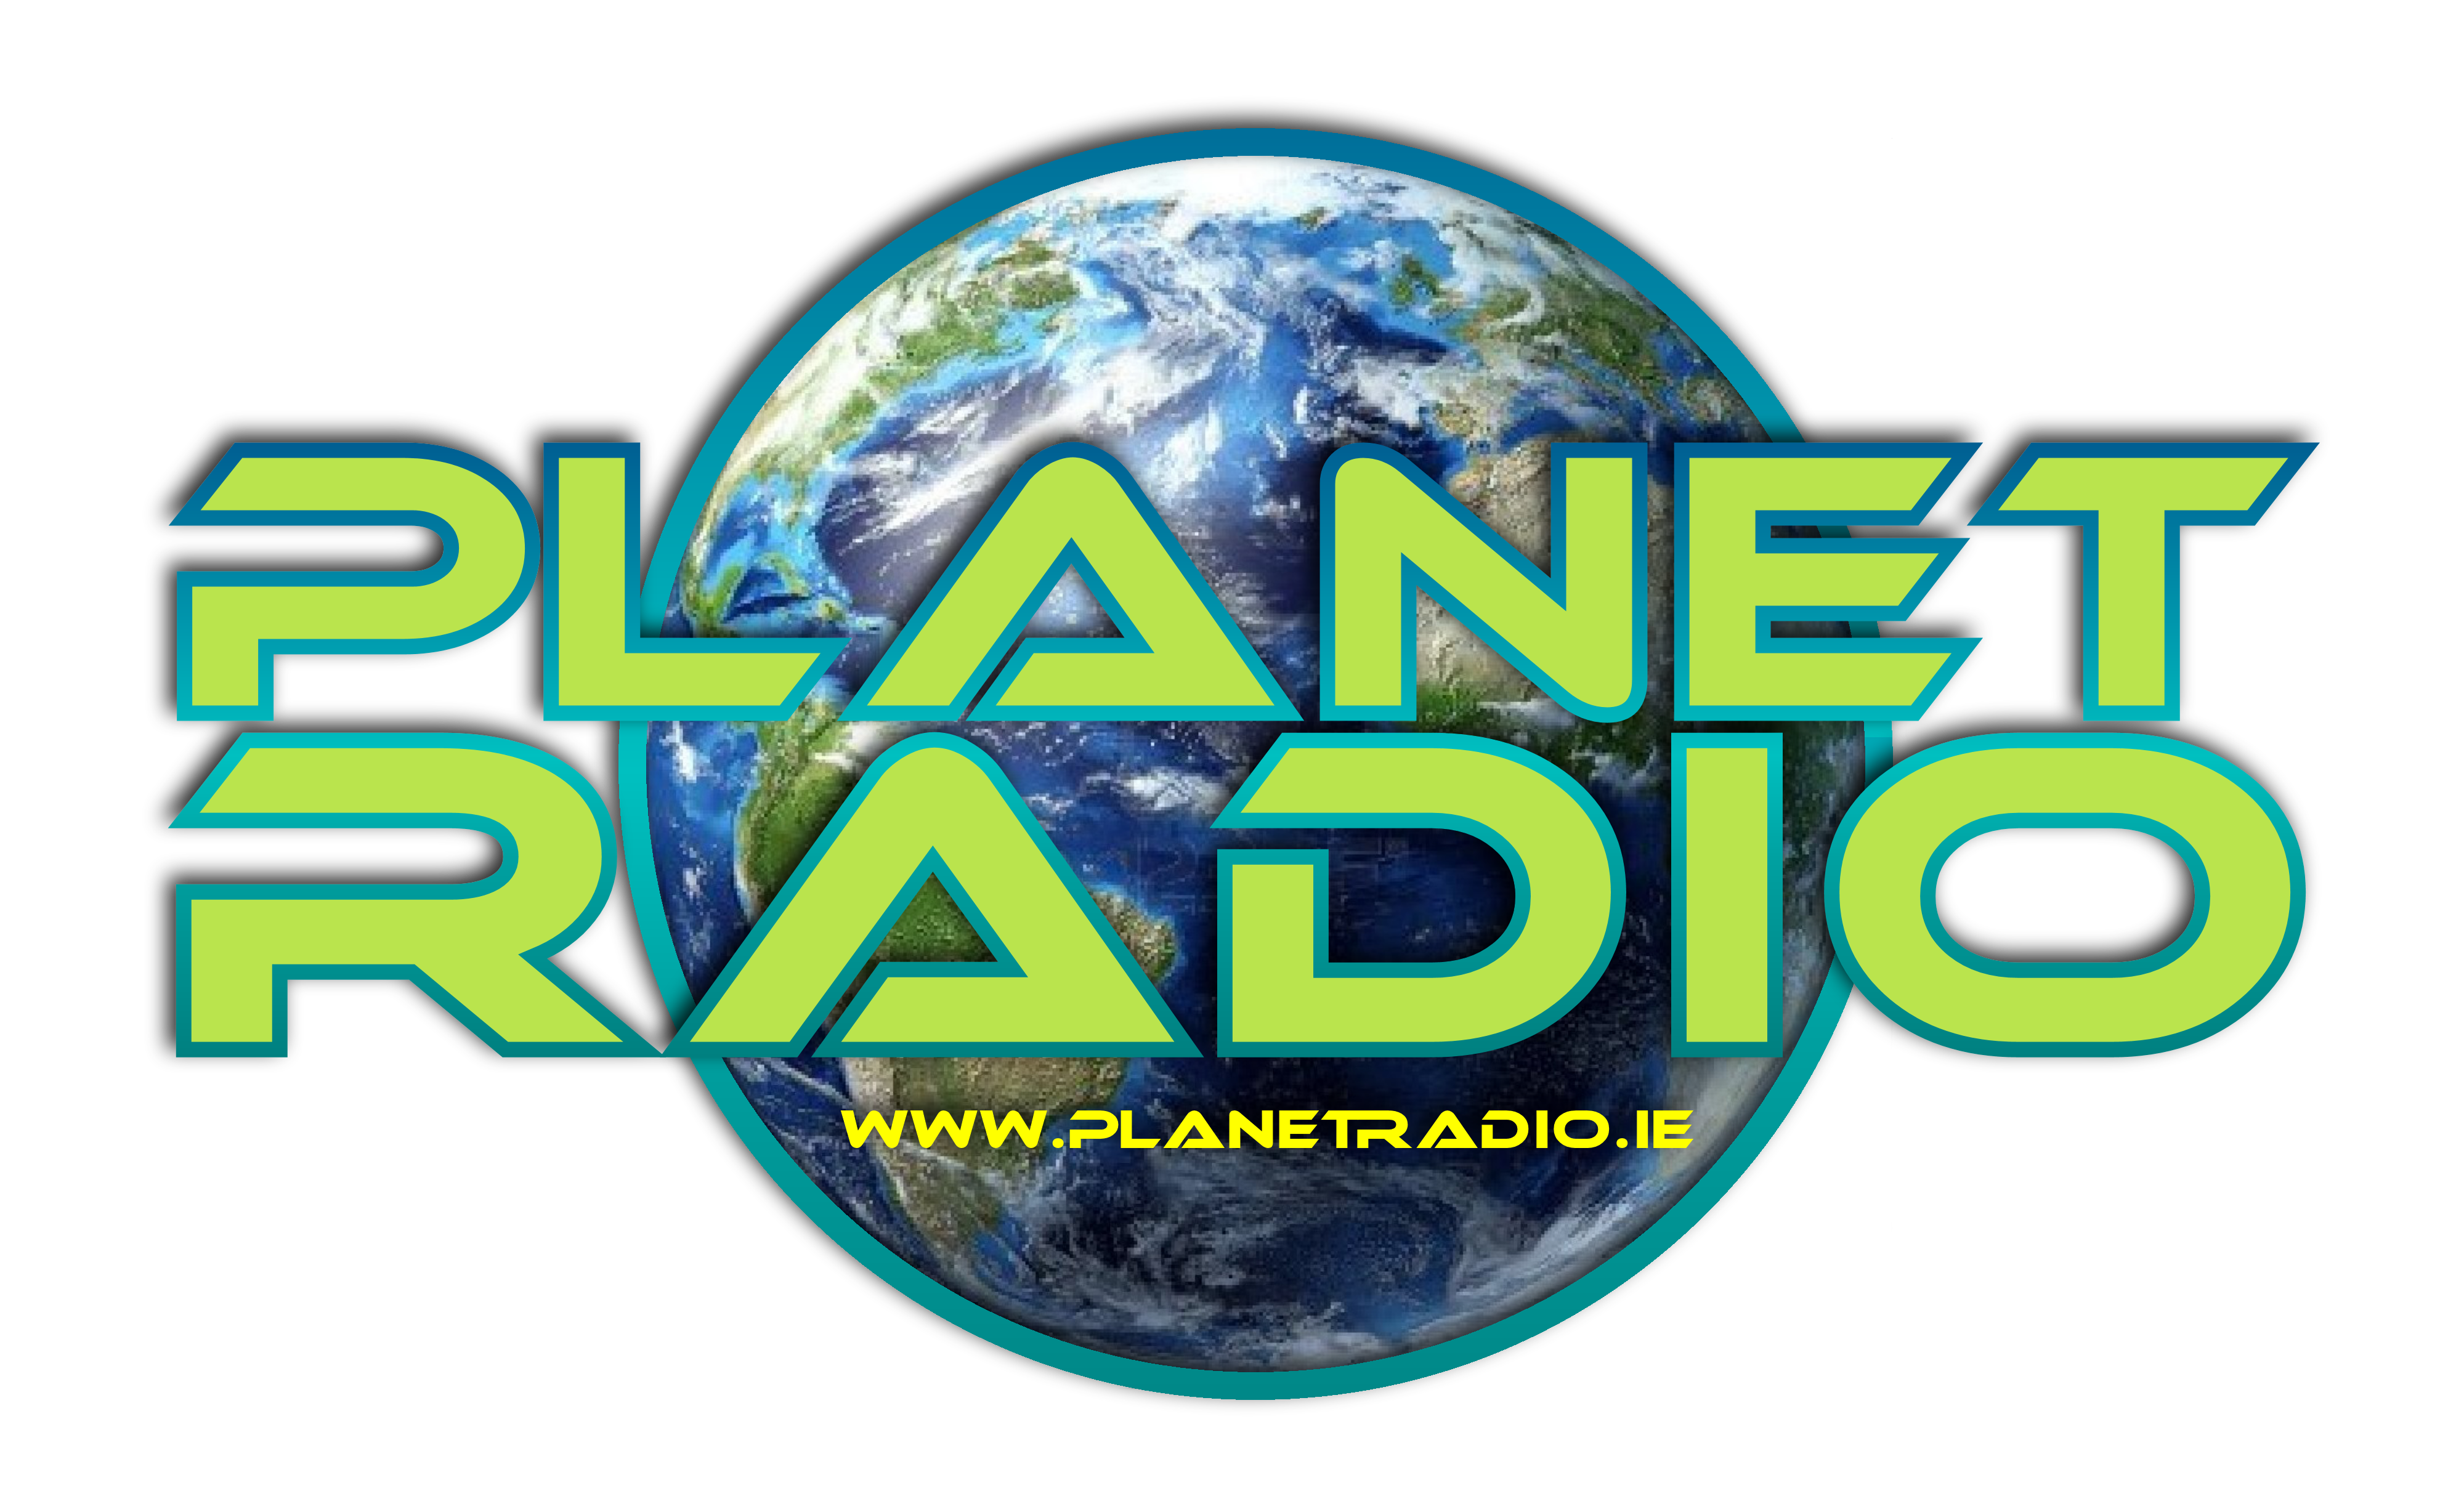 Planetradio.ie